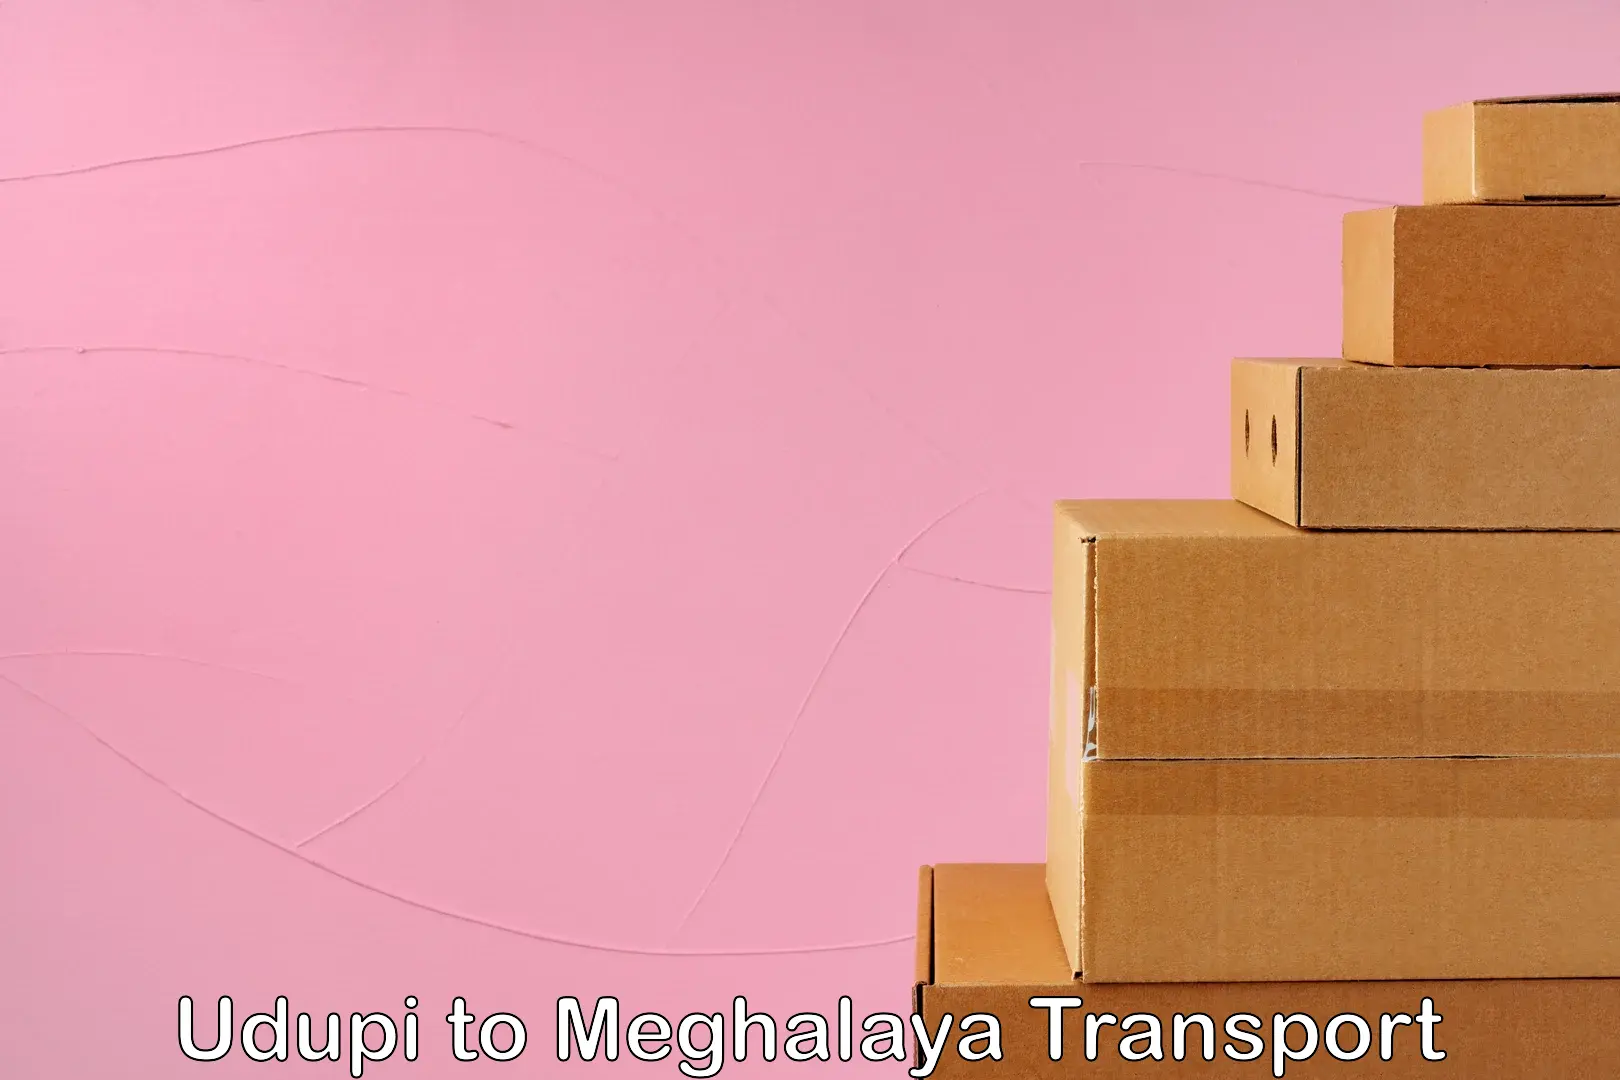 Road transport online services Udupi to Meghalaya